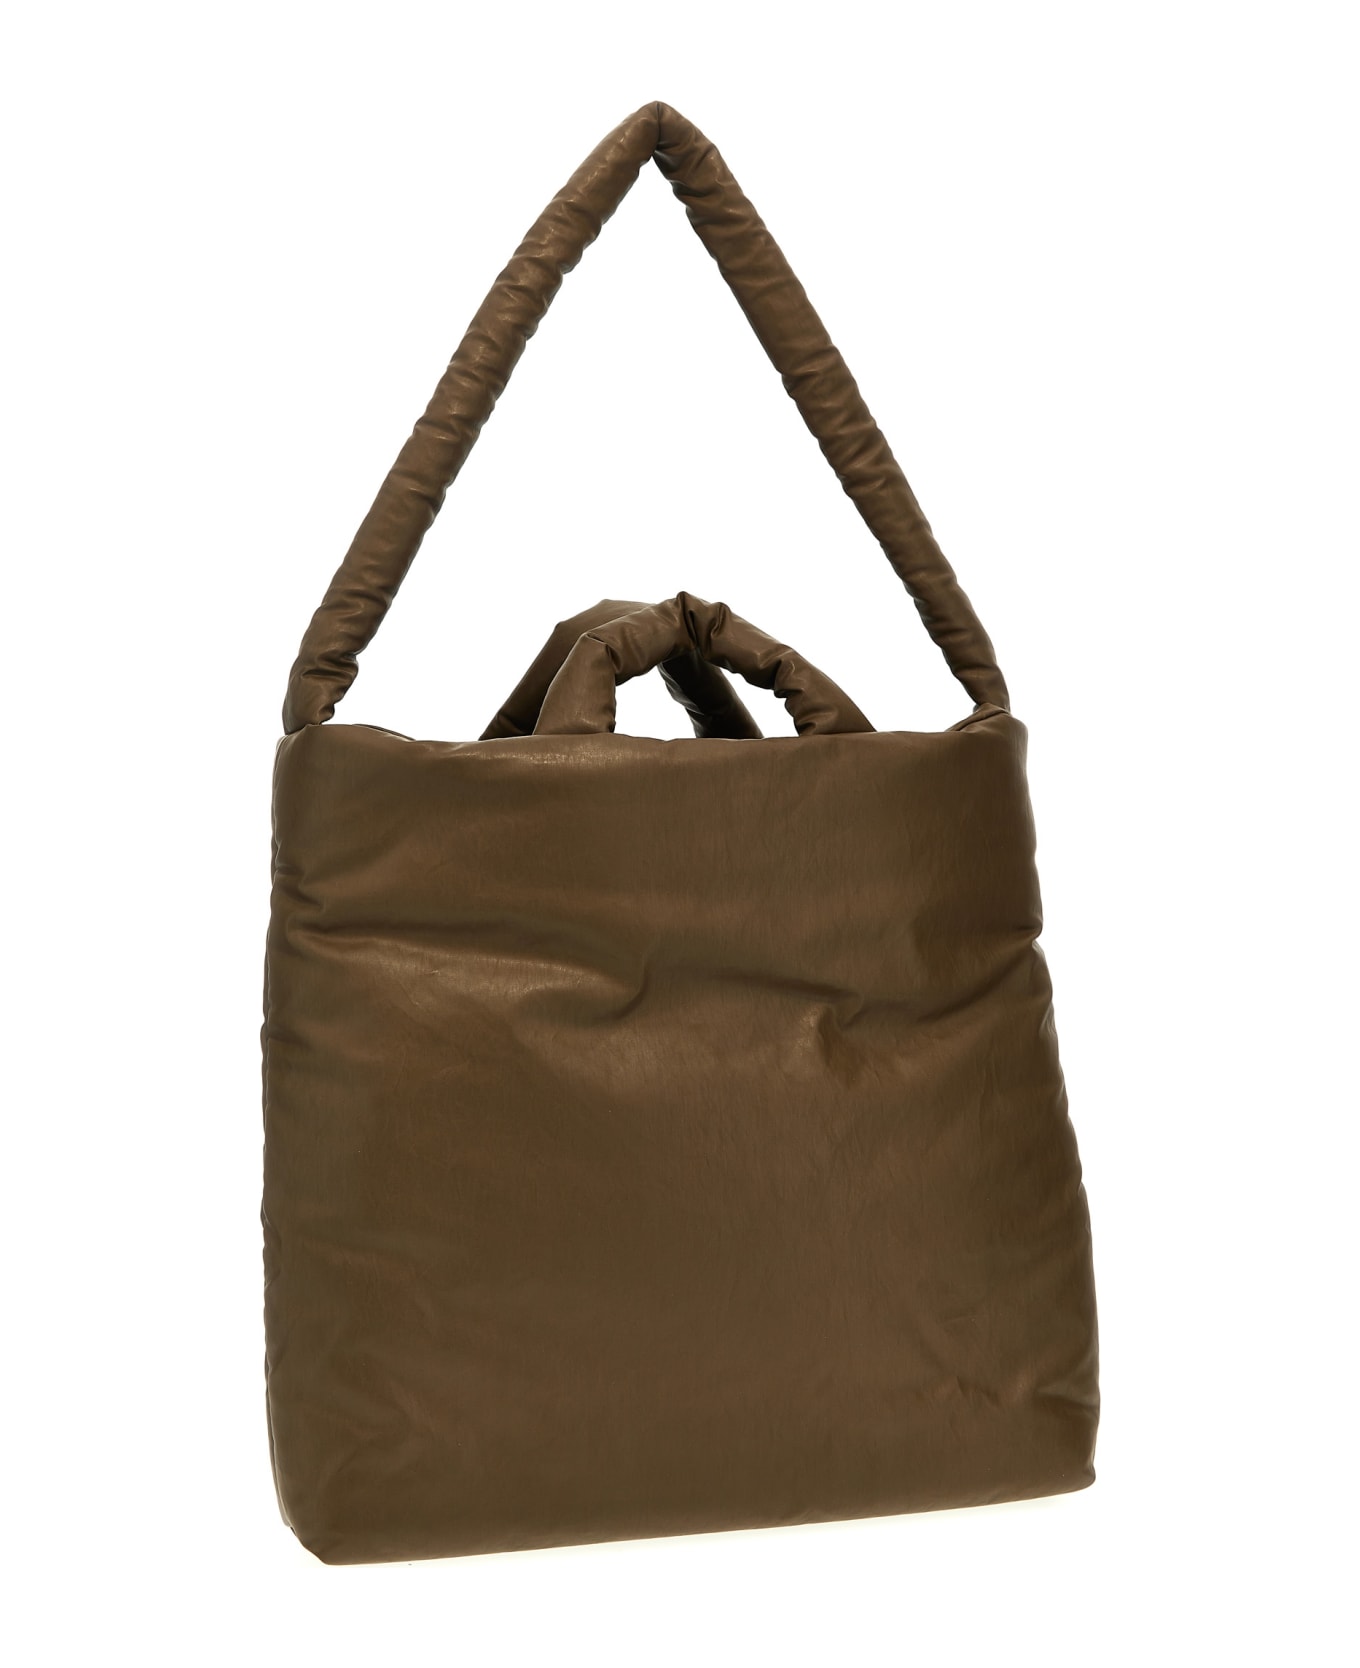 KASSL Editions 'pillow Medium' Shopping Bag - Brown